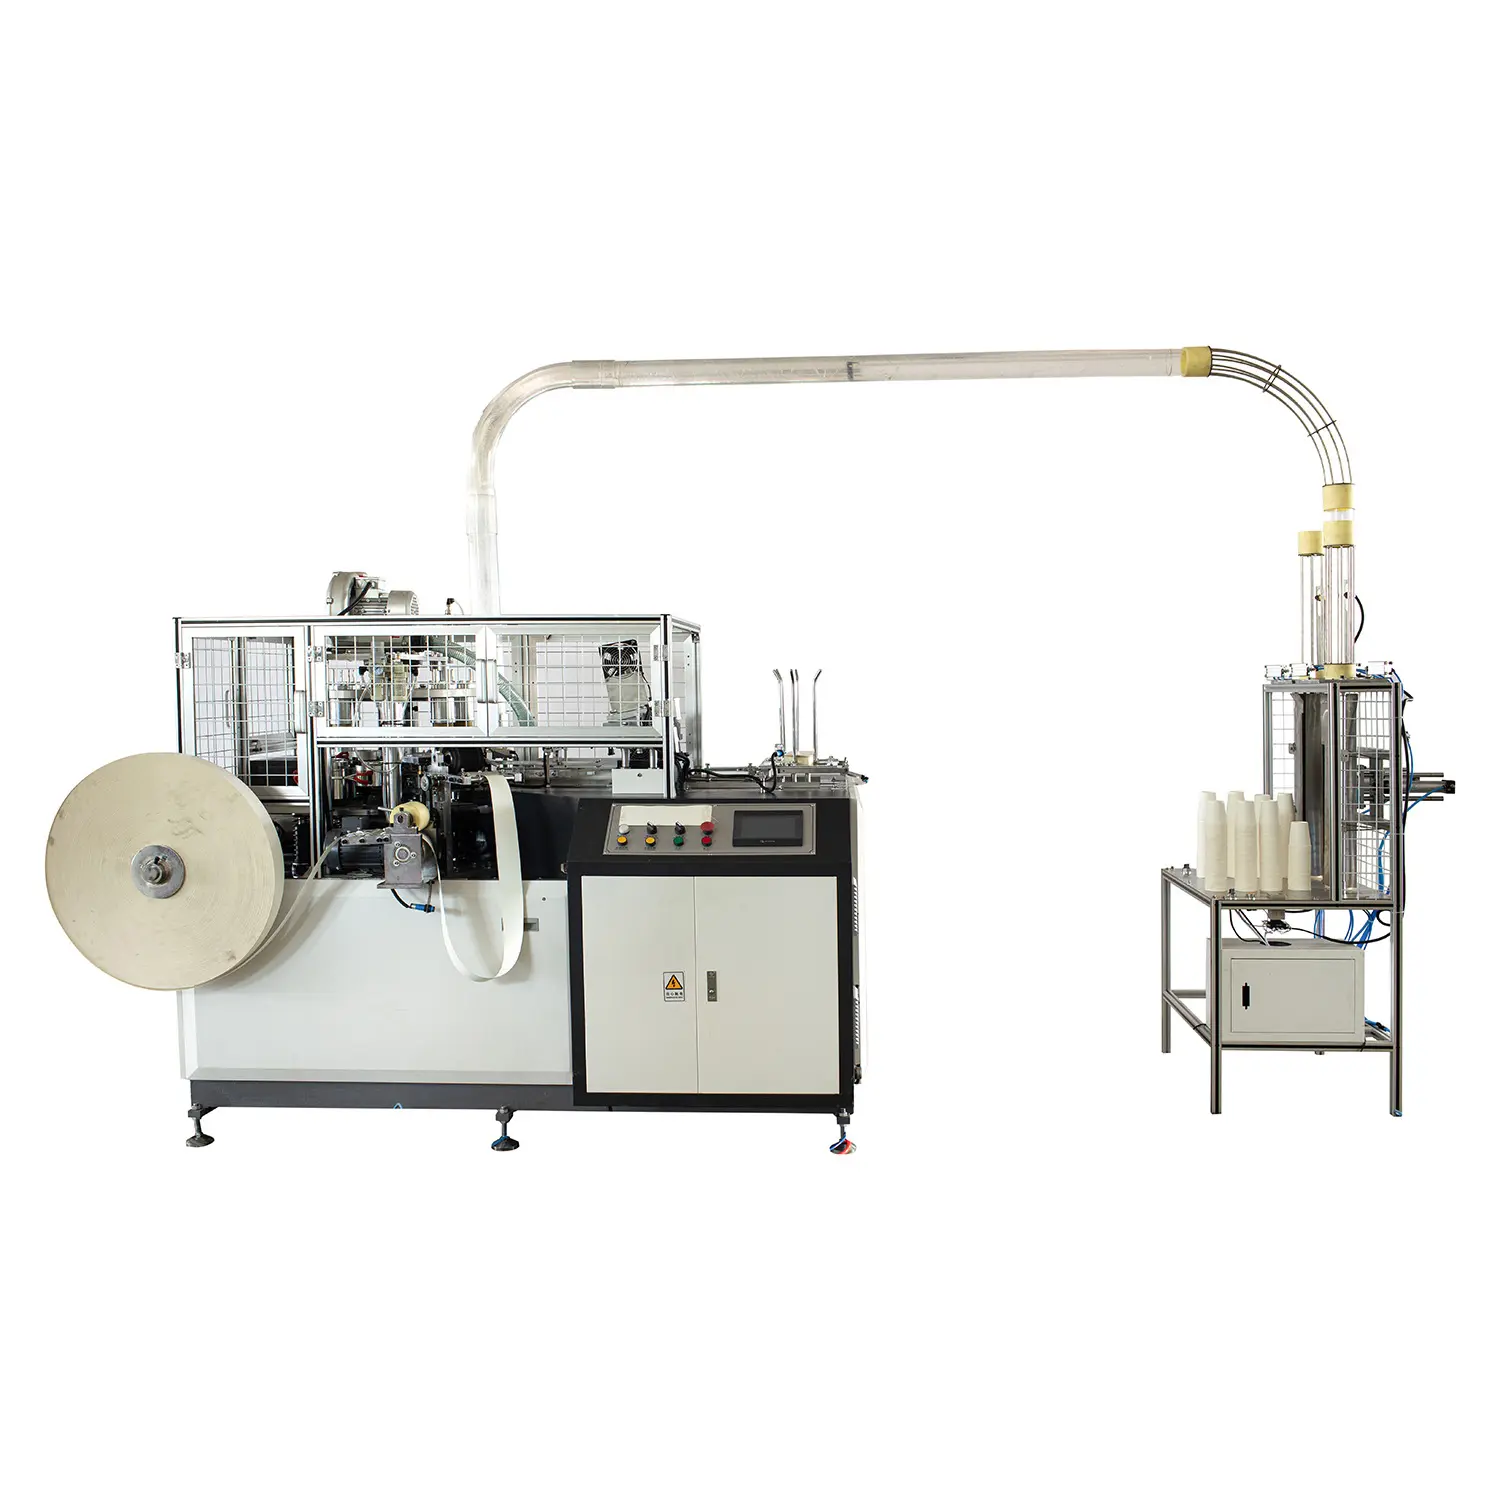 เครื่องผลิตถ้วยกระดาษ CW-NP16กล่องเกียร์เคลือบด้วย PE สองชั้นเครื่องผลิตถ้วยกระดาษ